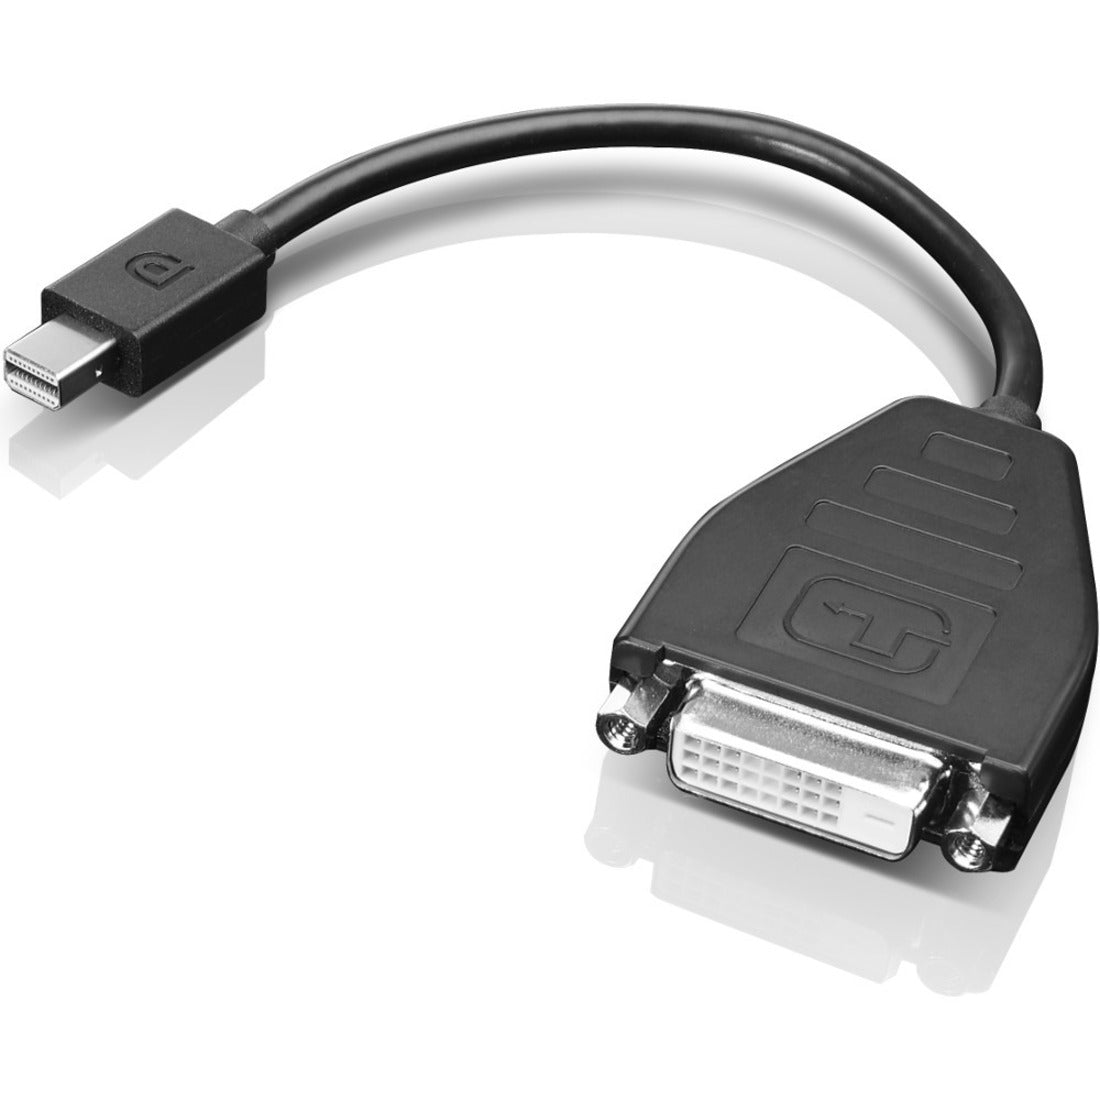 Lenovo 0B47090 Mini-DisplayPort to DVI-D Adapter Cable (Single Link) Koble enhetene dine med letthet